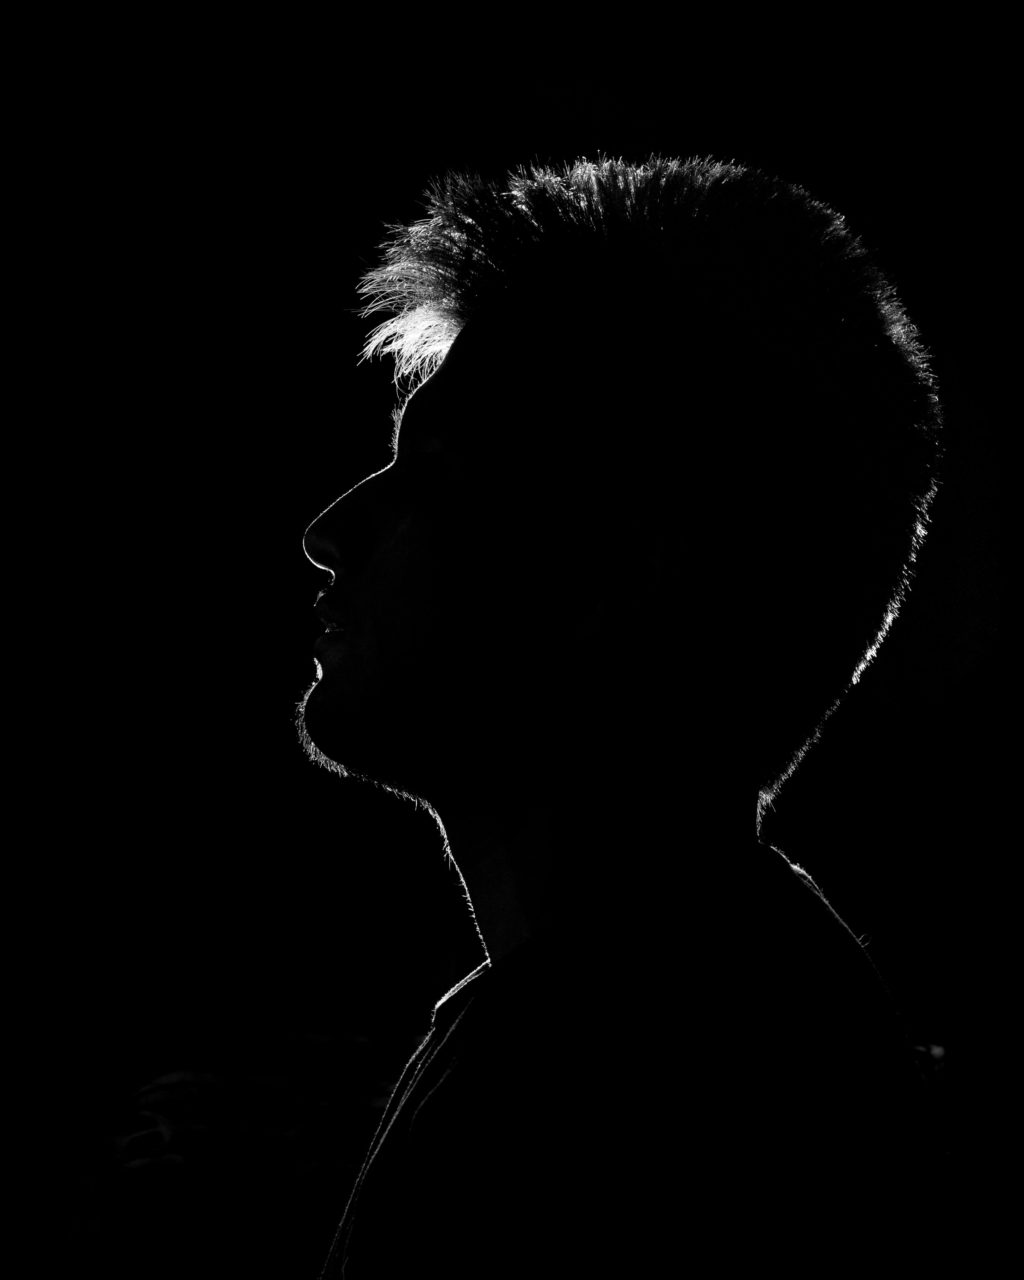 rim light portrait in black and white